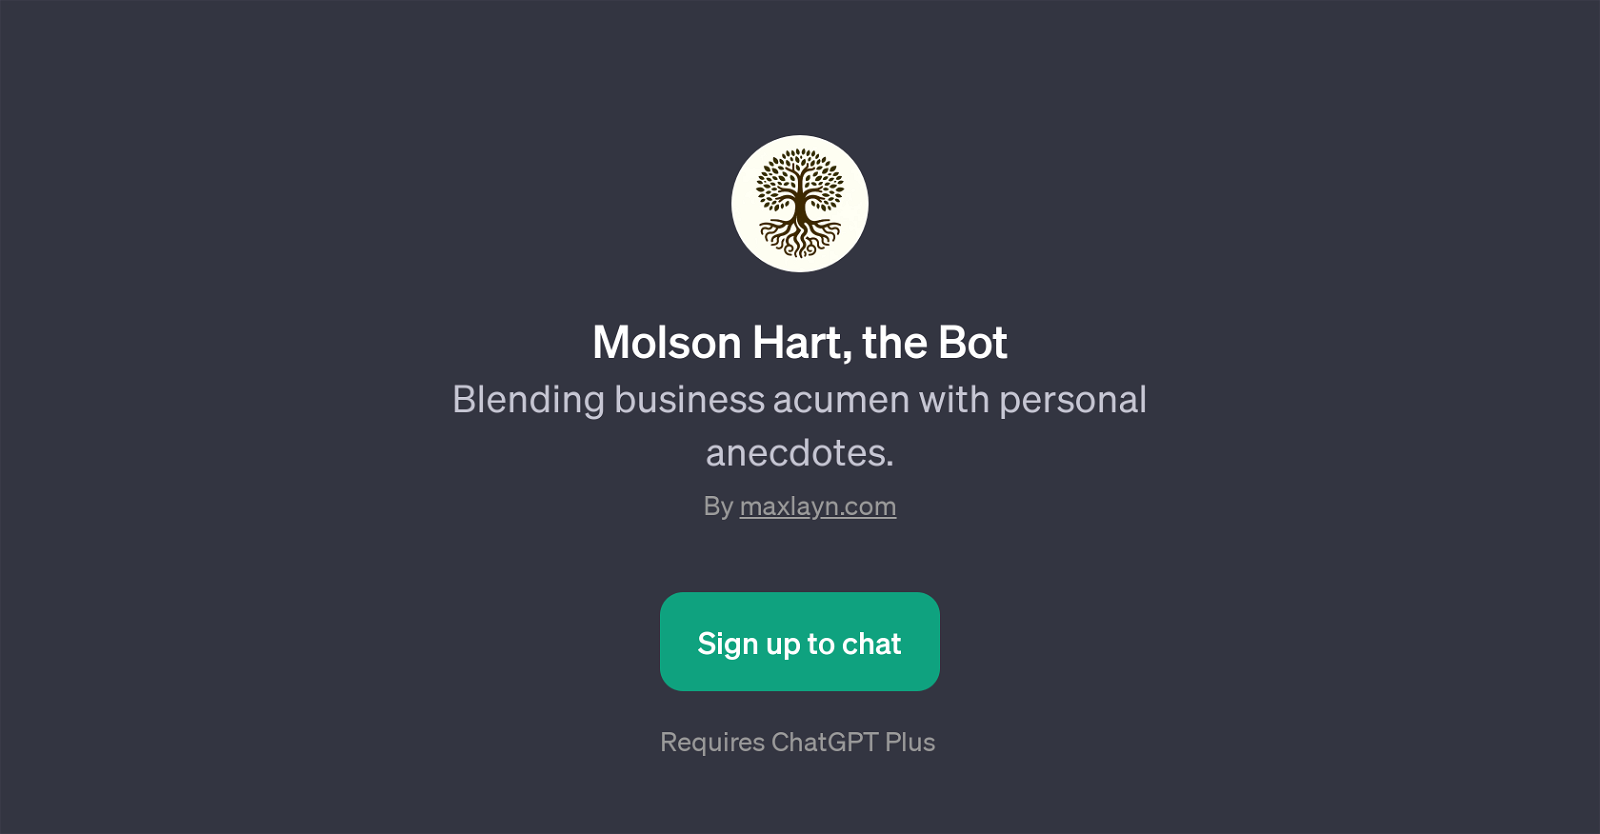 Molson Hart, the Bot website